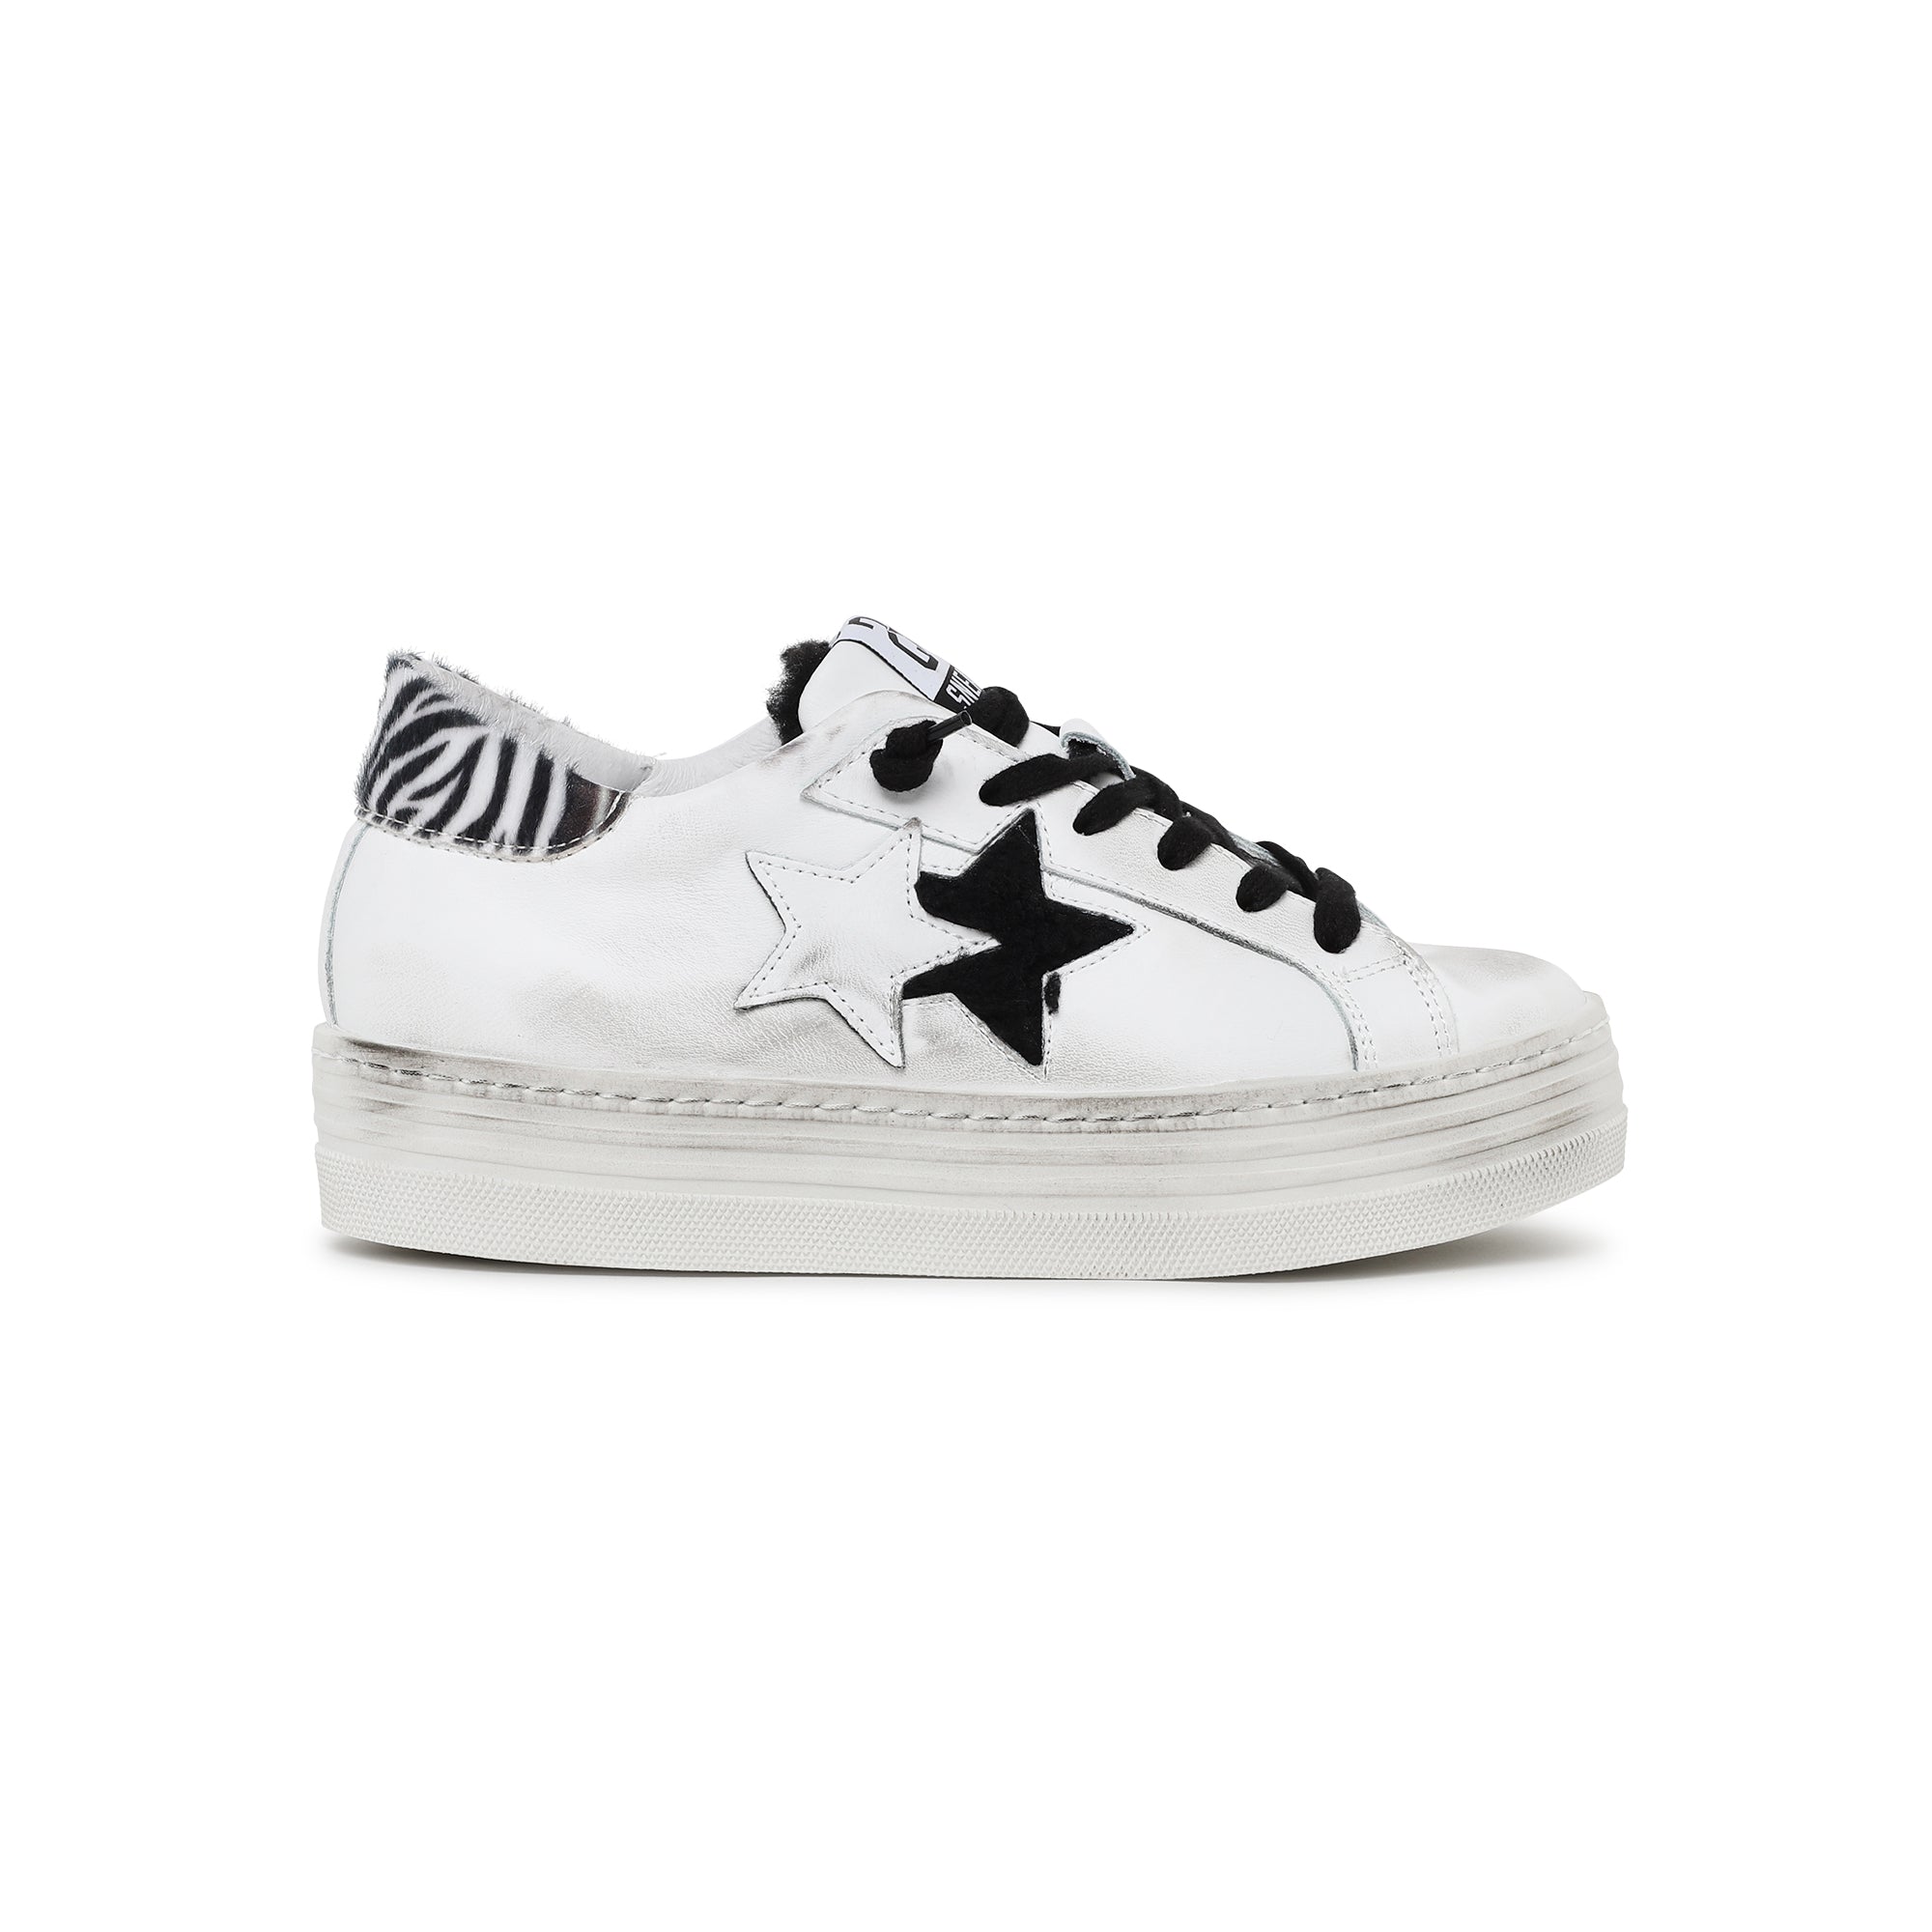 sneaker effetto used con suola rialzata, parte posteriore con pelo zebrato con stellina pelo nero - 4045034WHITE/BLACK